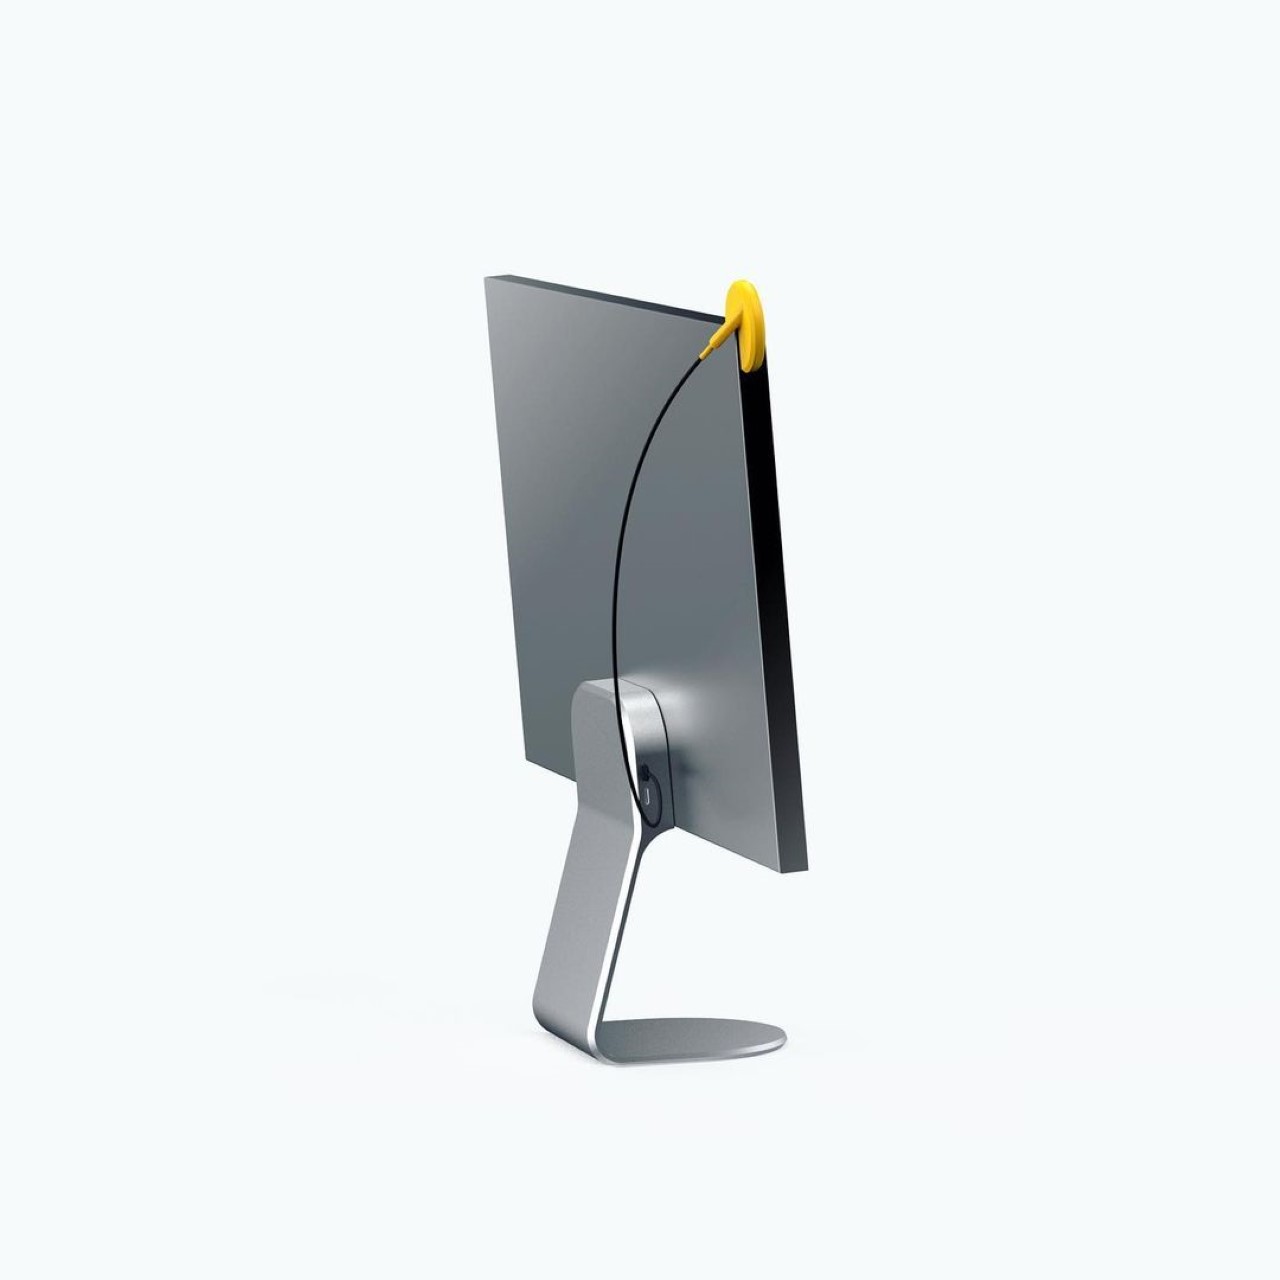 El Micrófono PacMan Concept fue diseñado por Andrew Edge para el Render Weekly's Instagram Challenge como un accesorio de escritorio dedicado para profesionales, estudiantes y jugadores.